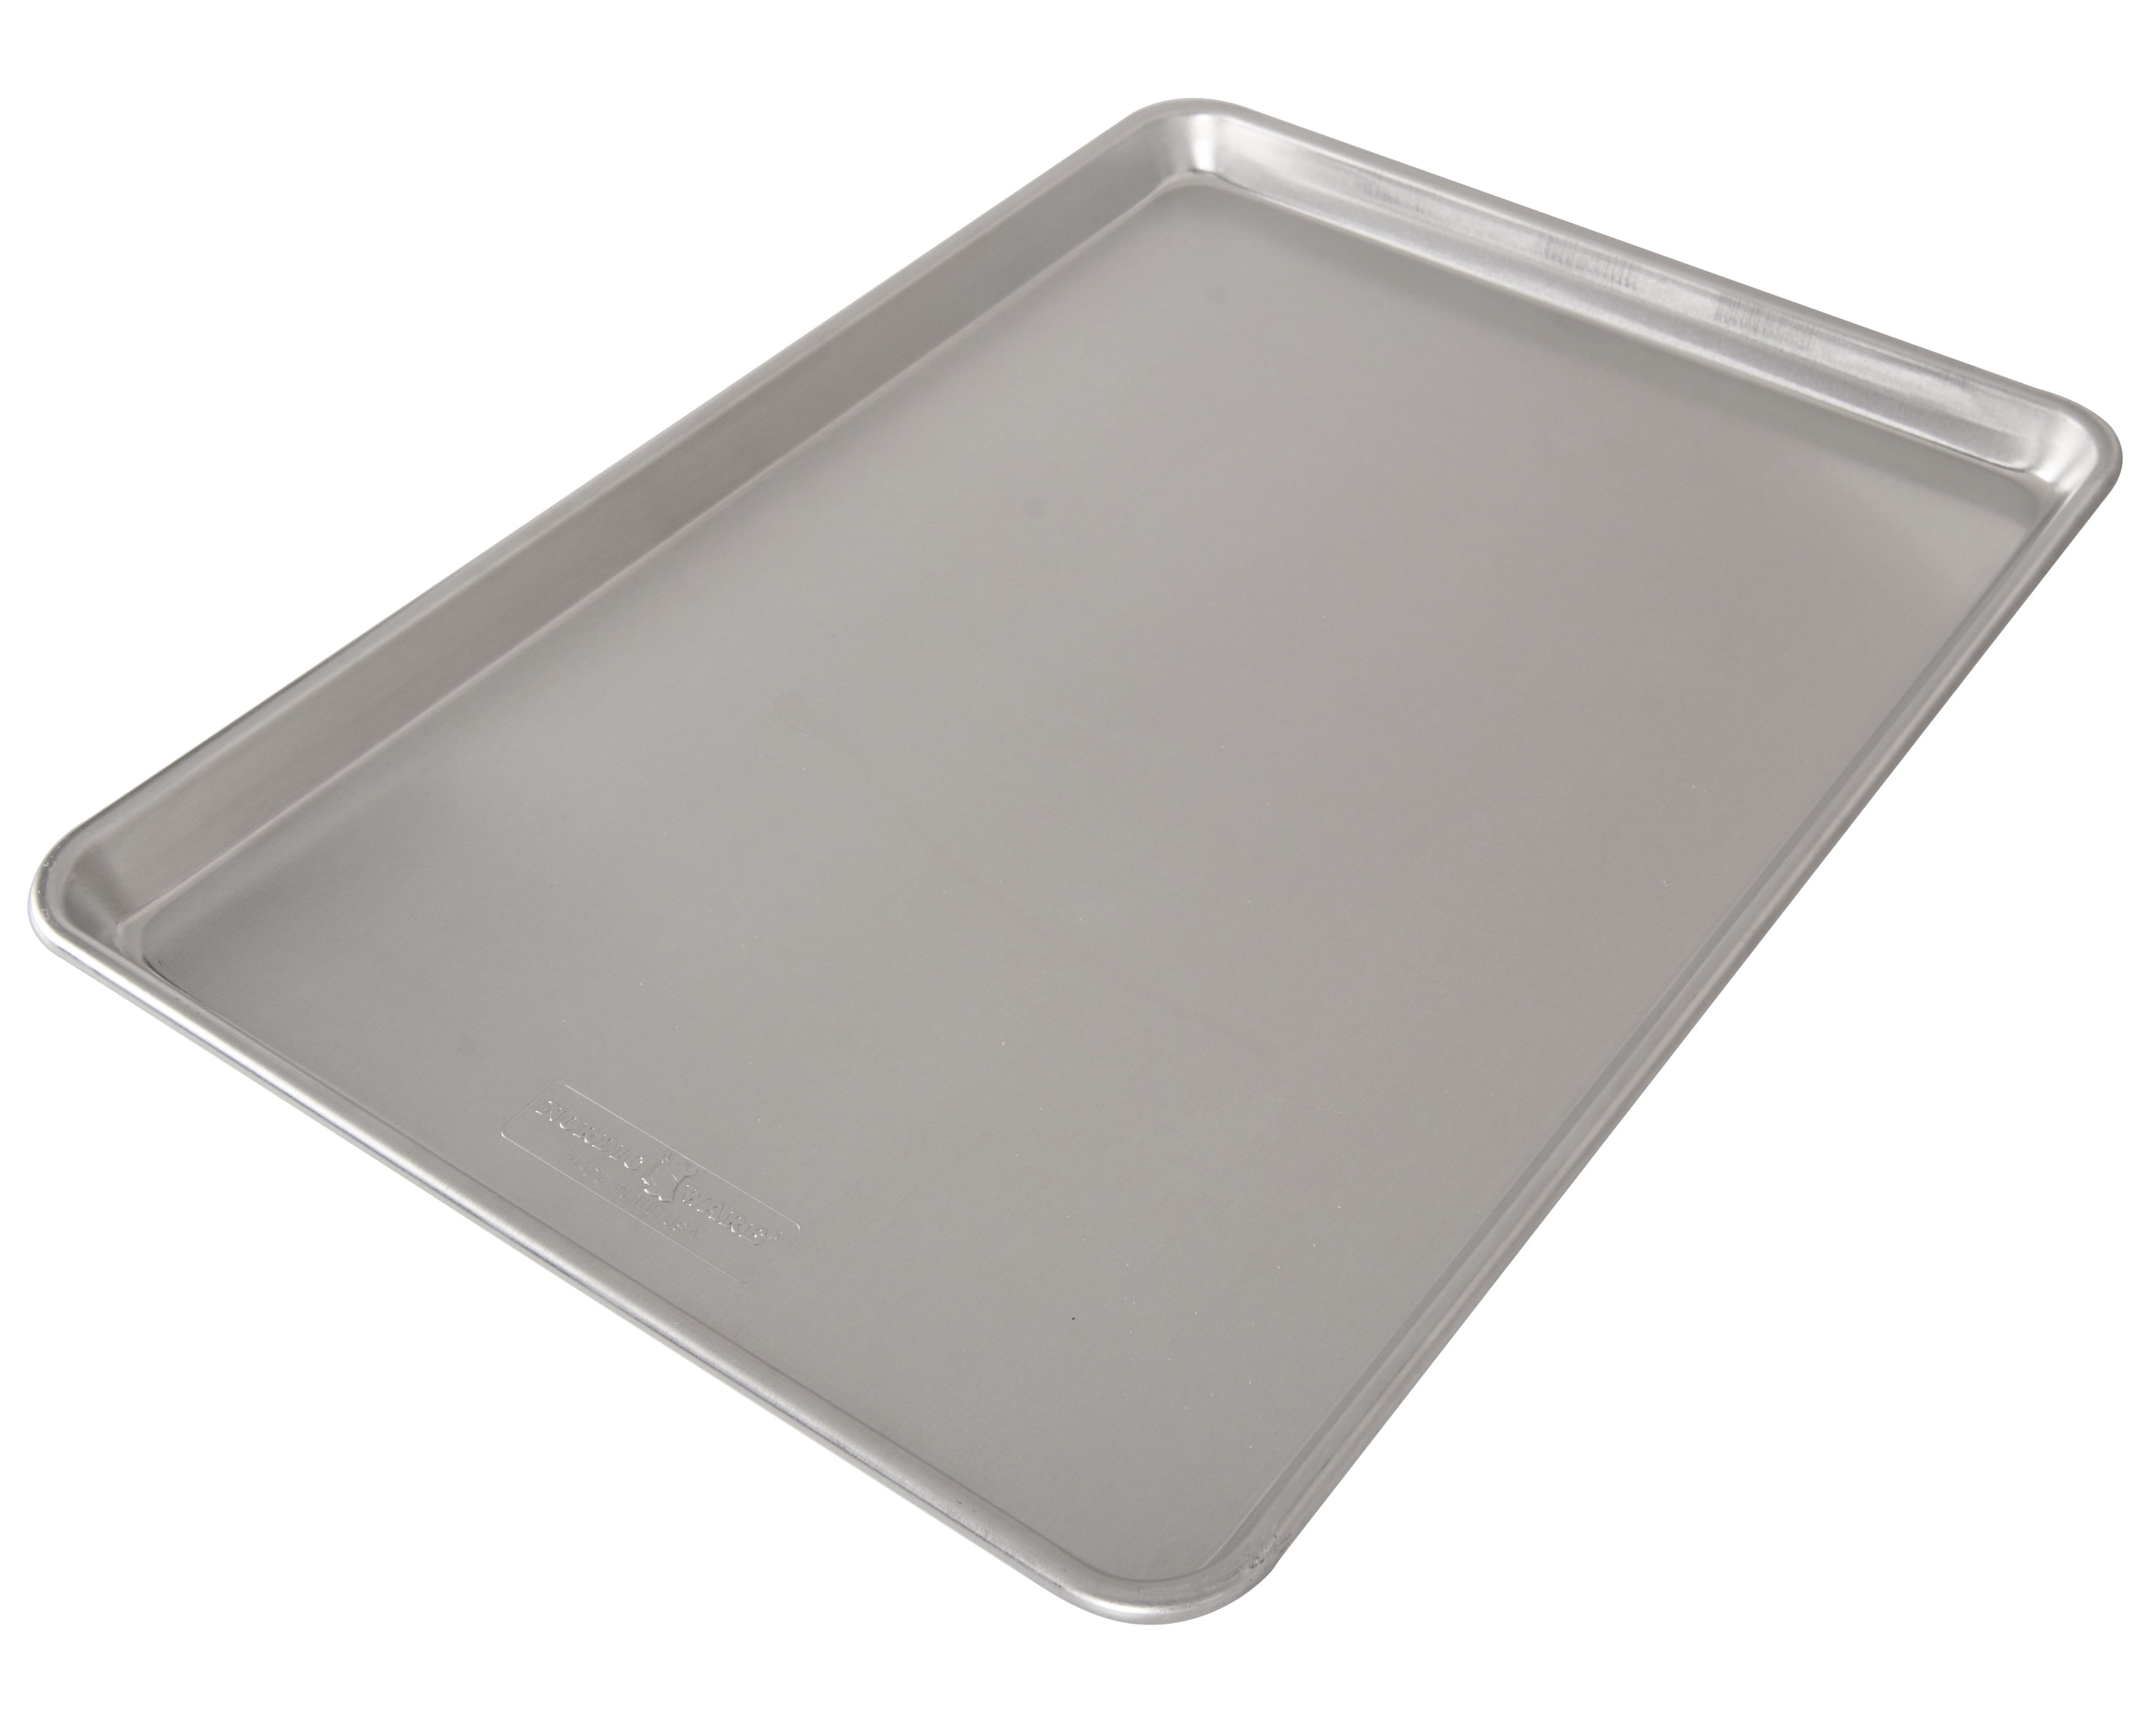 Aluminum Baking Sheet No edges - French Full Size - 60 x 40 cm - 3mm